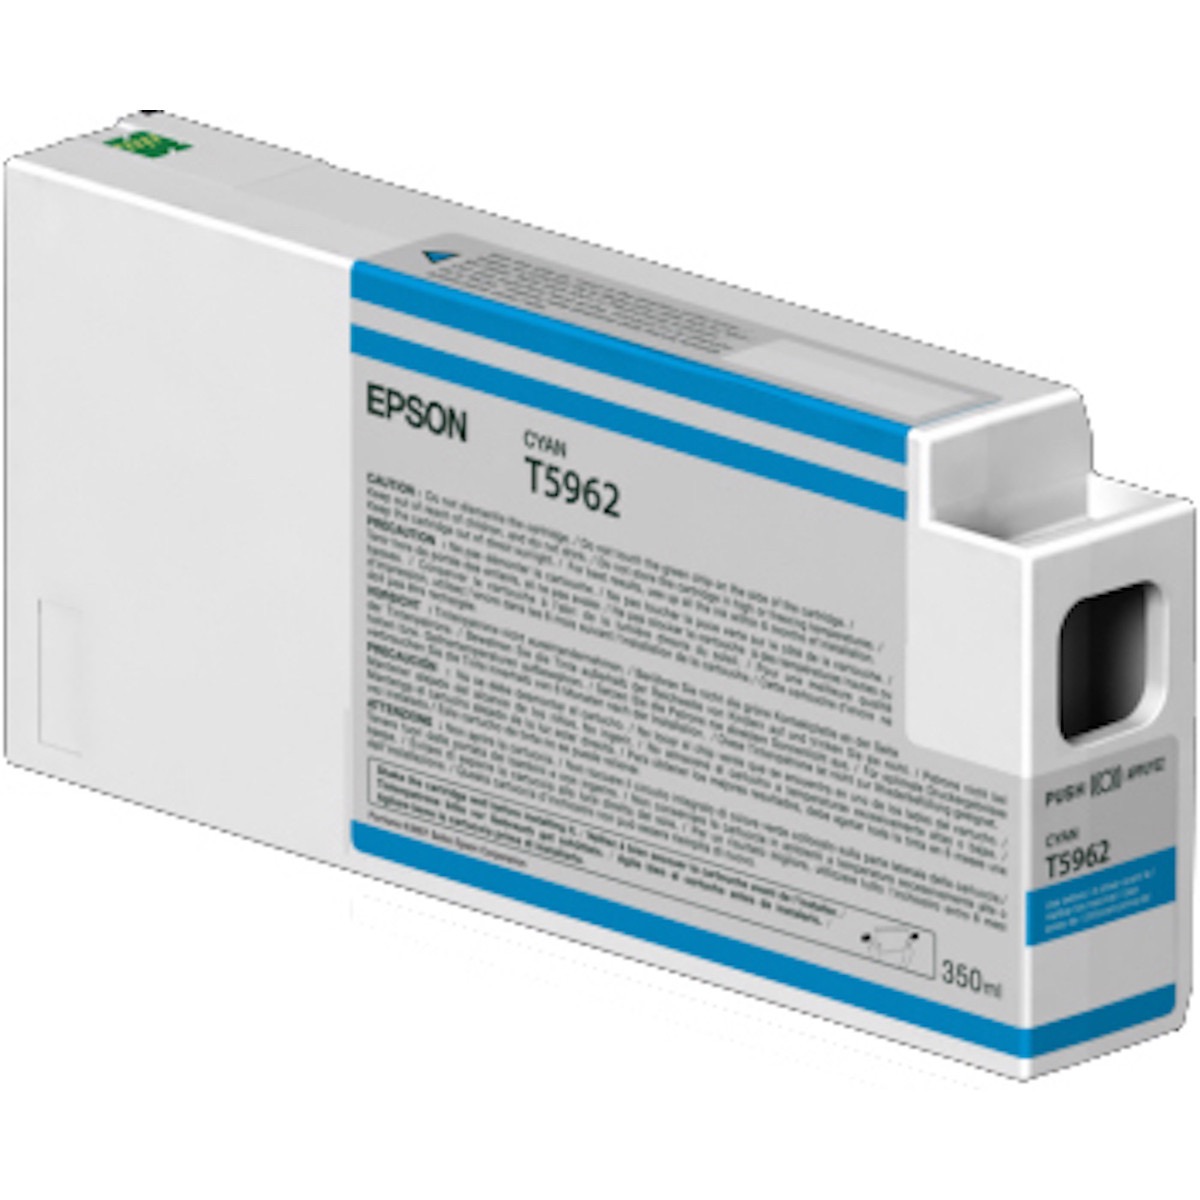 Epson T5962 cyan Tinte